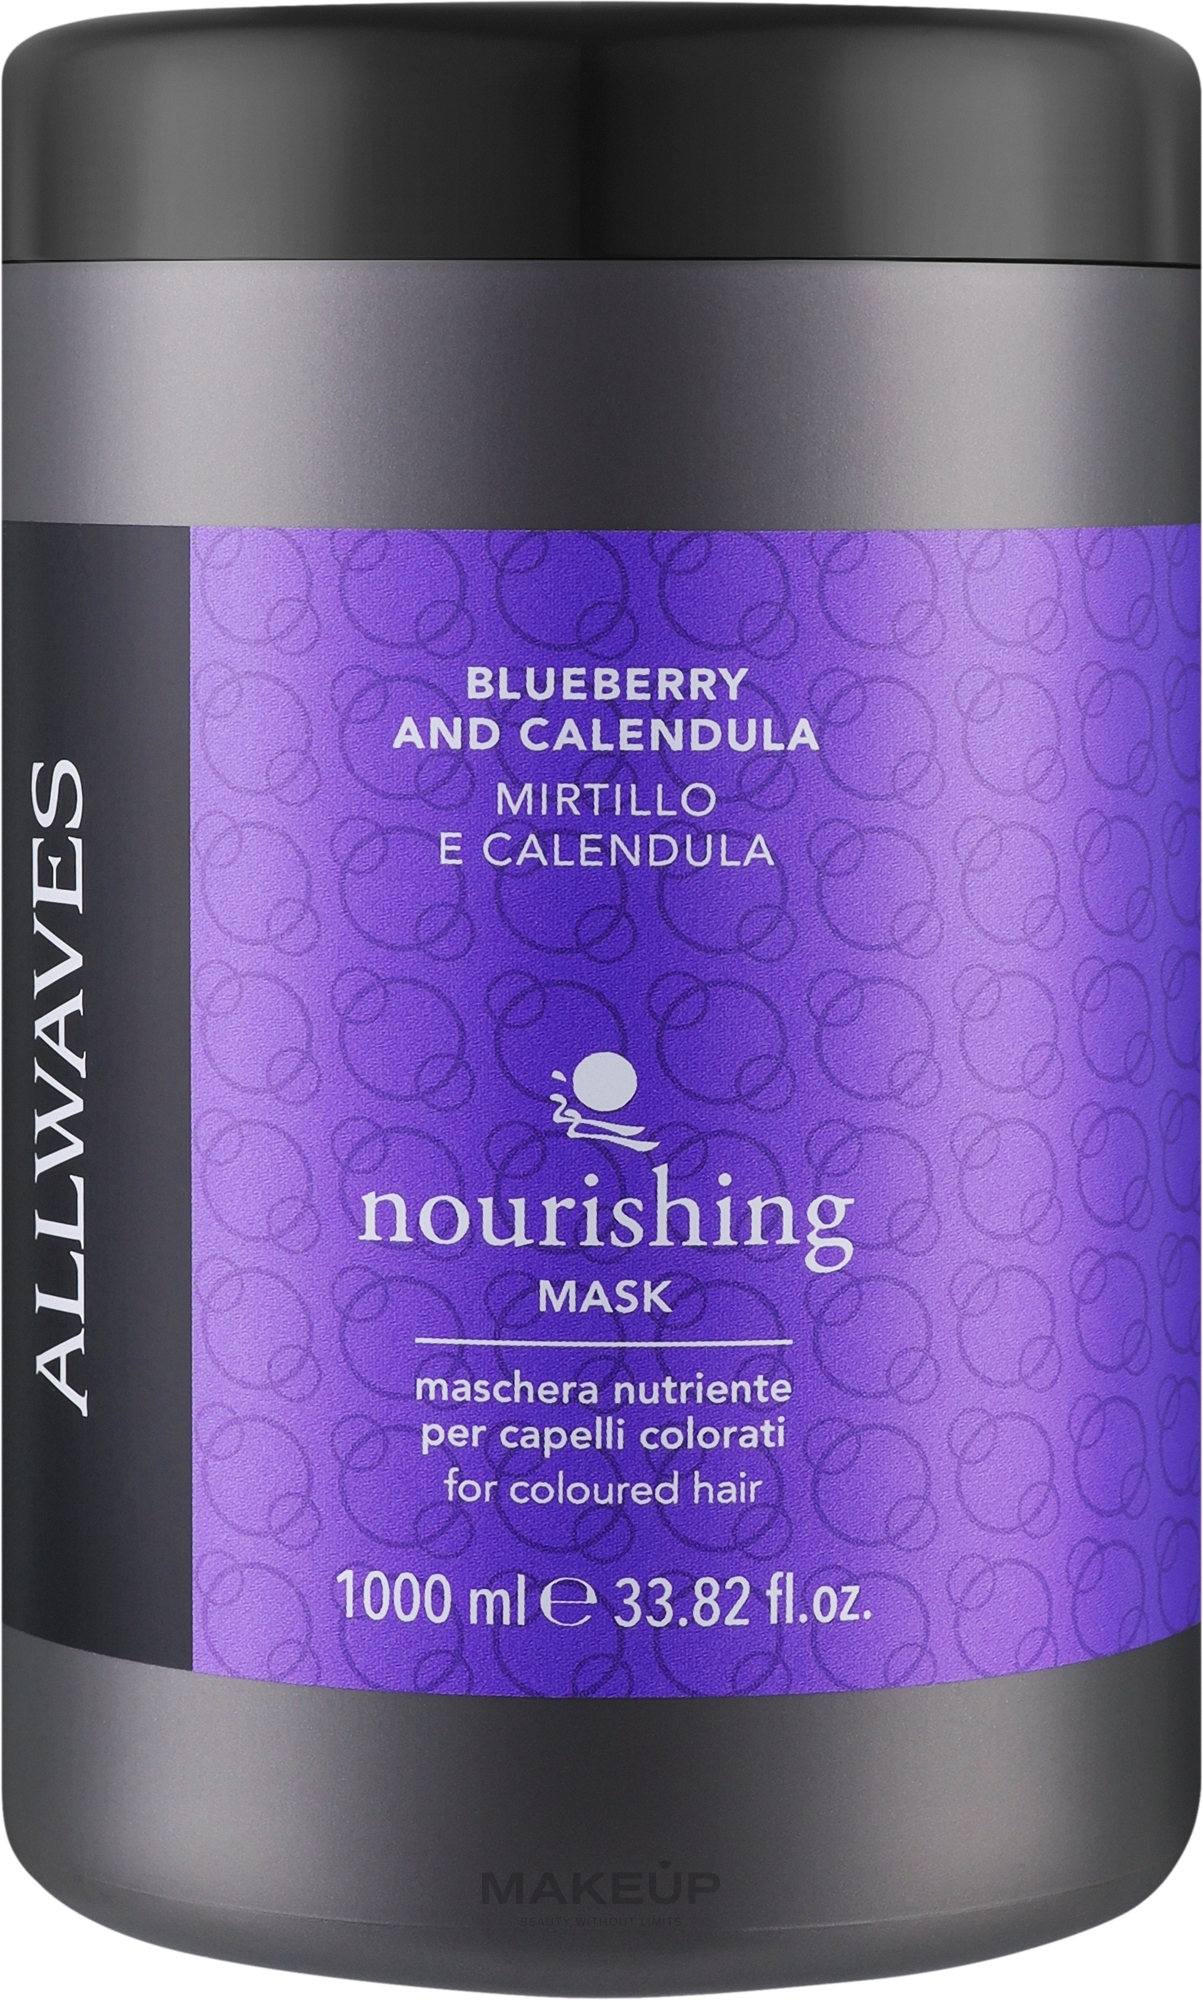 Питательная маска после окрашивания с экстрактами ягод и календулы - Allwaves Blueberry And Calendula Nourishing Mask — фото 1000ml